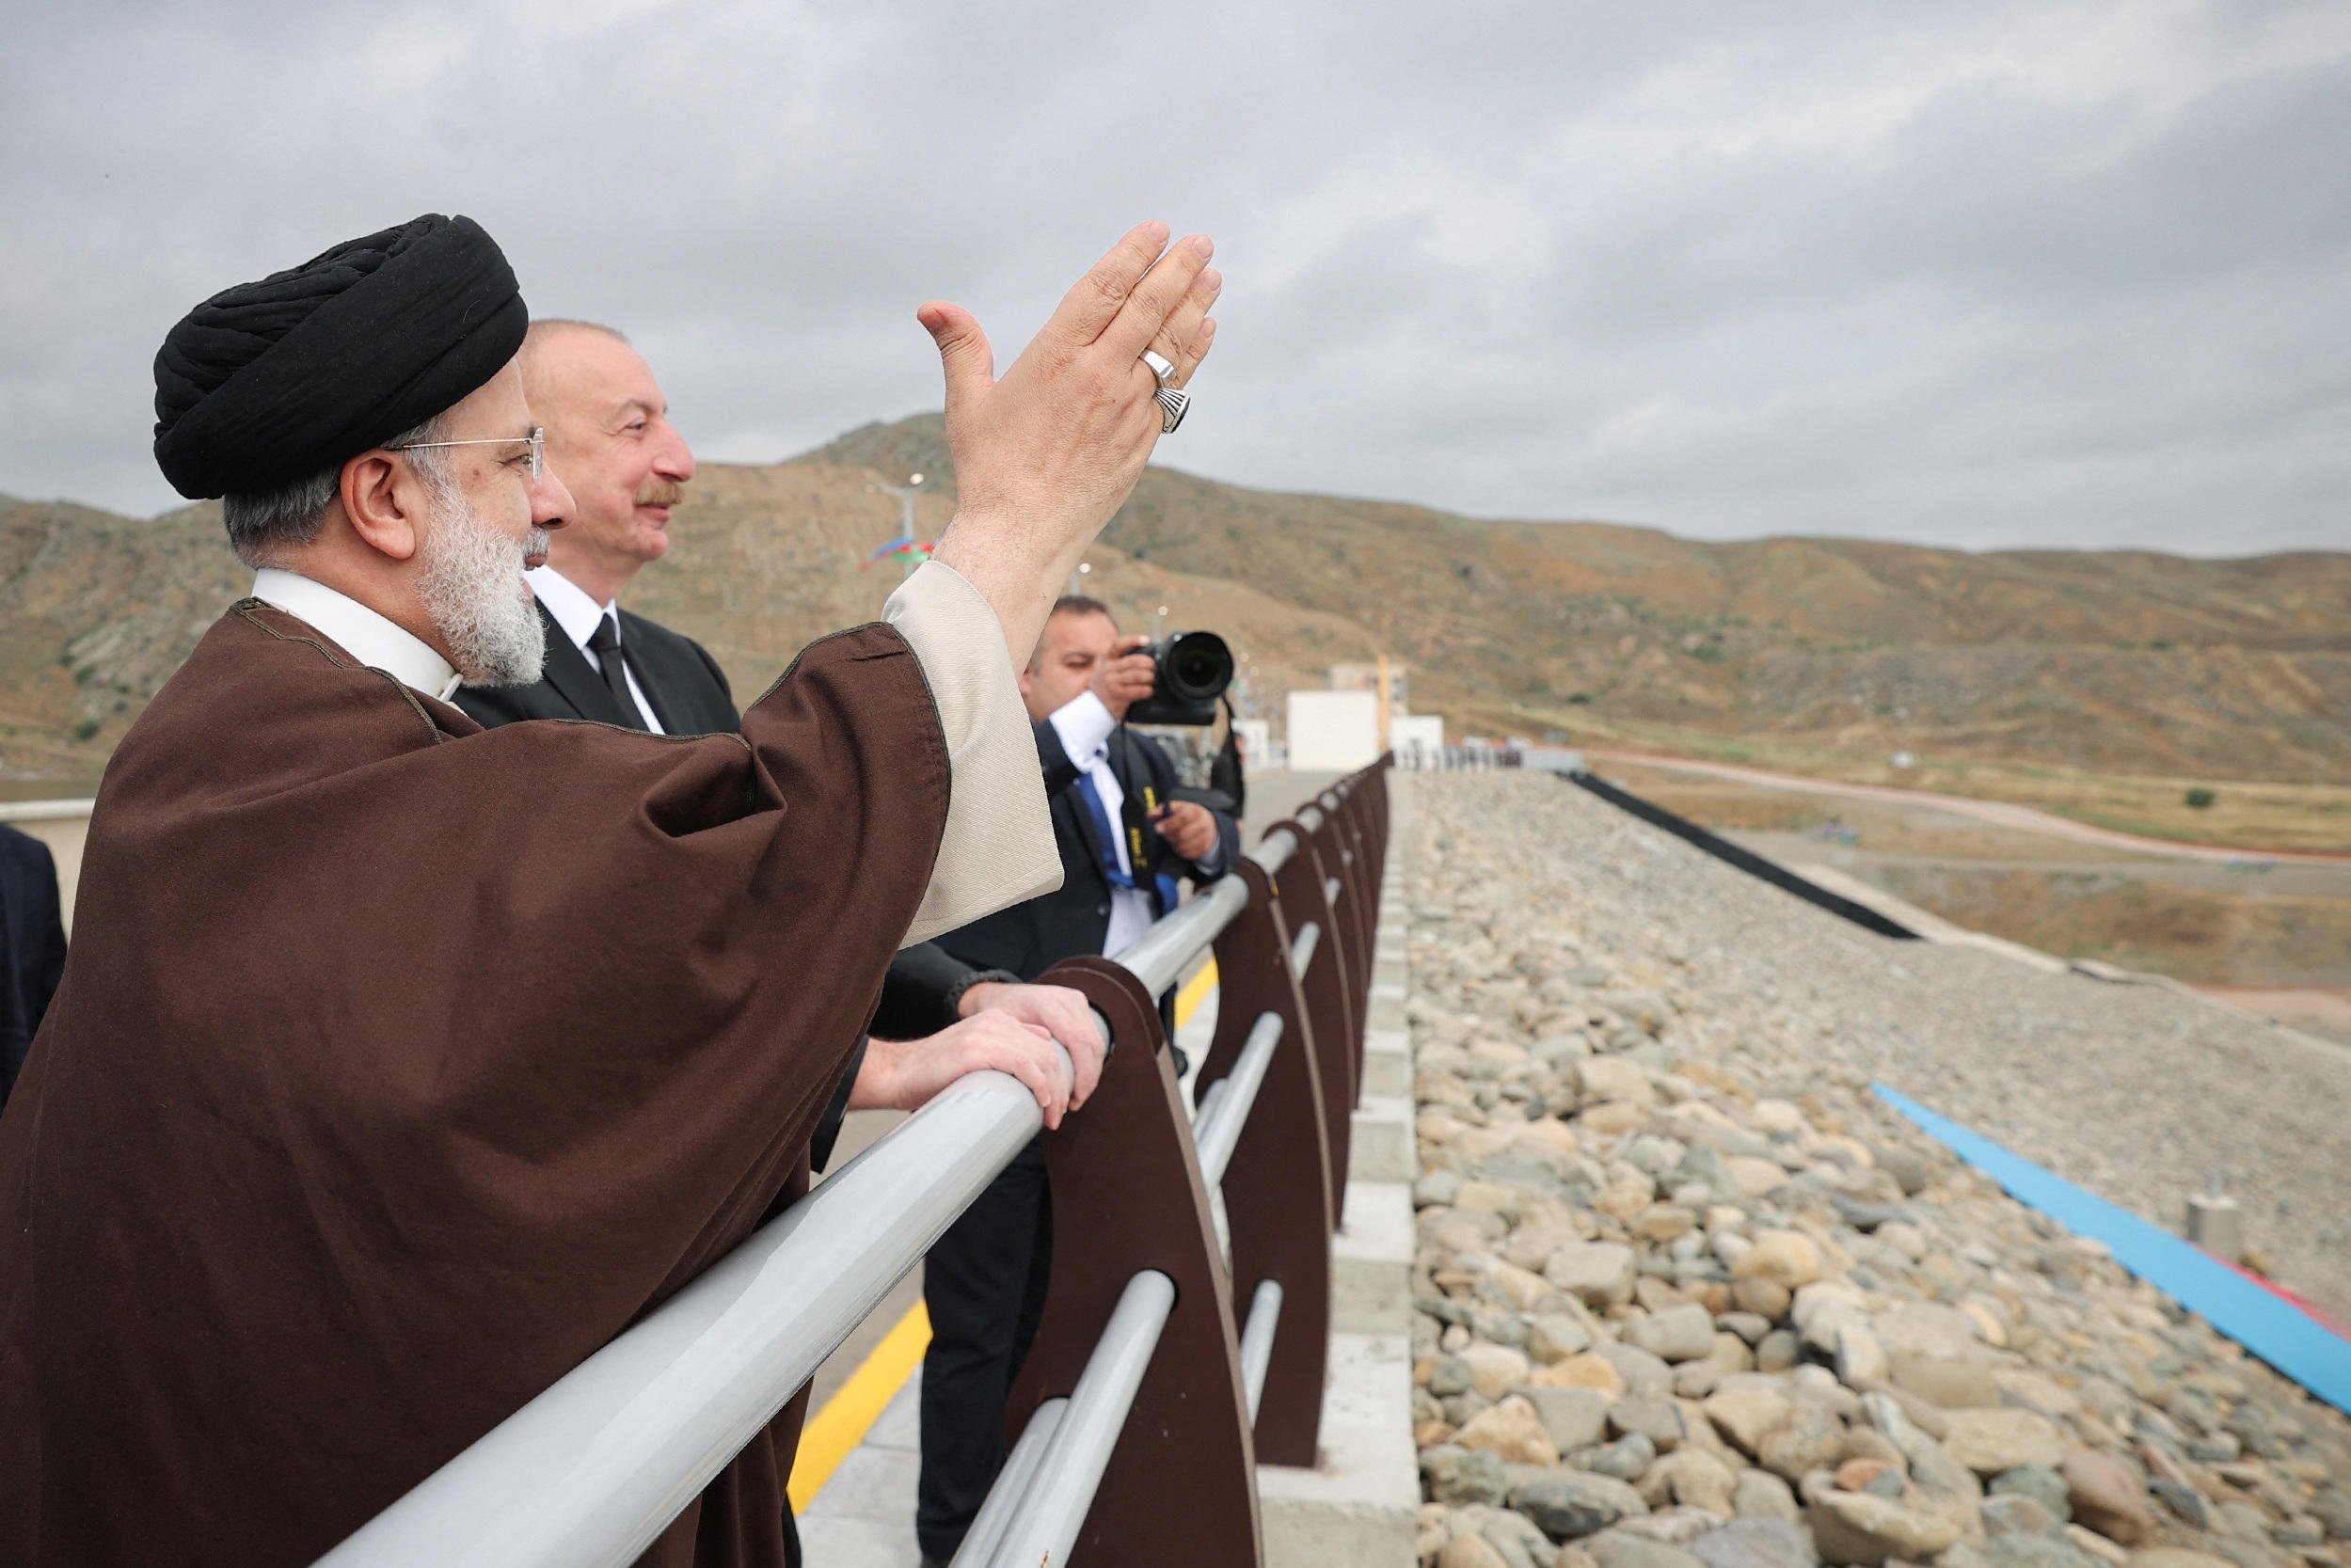 Le président iranien Ebrahim Raïssi s’était rendu dimanche dans la province de l’Azerbaïdjan orientale, où il a notamment inauguré un barrage à la frontière entre les deux pays, en compagnie du président de l'Azerbaïdjan. Présidence iranienne / West Asia News Agency/ Reuters.